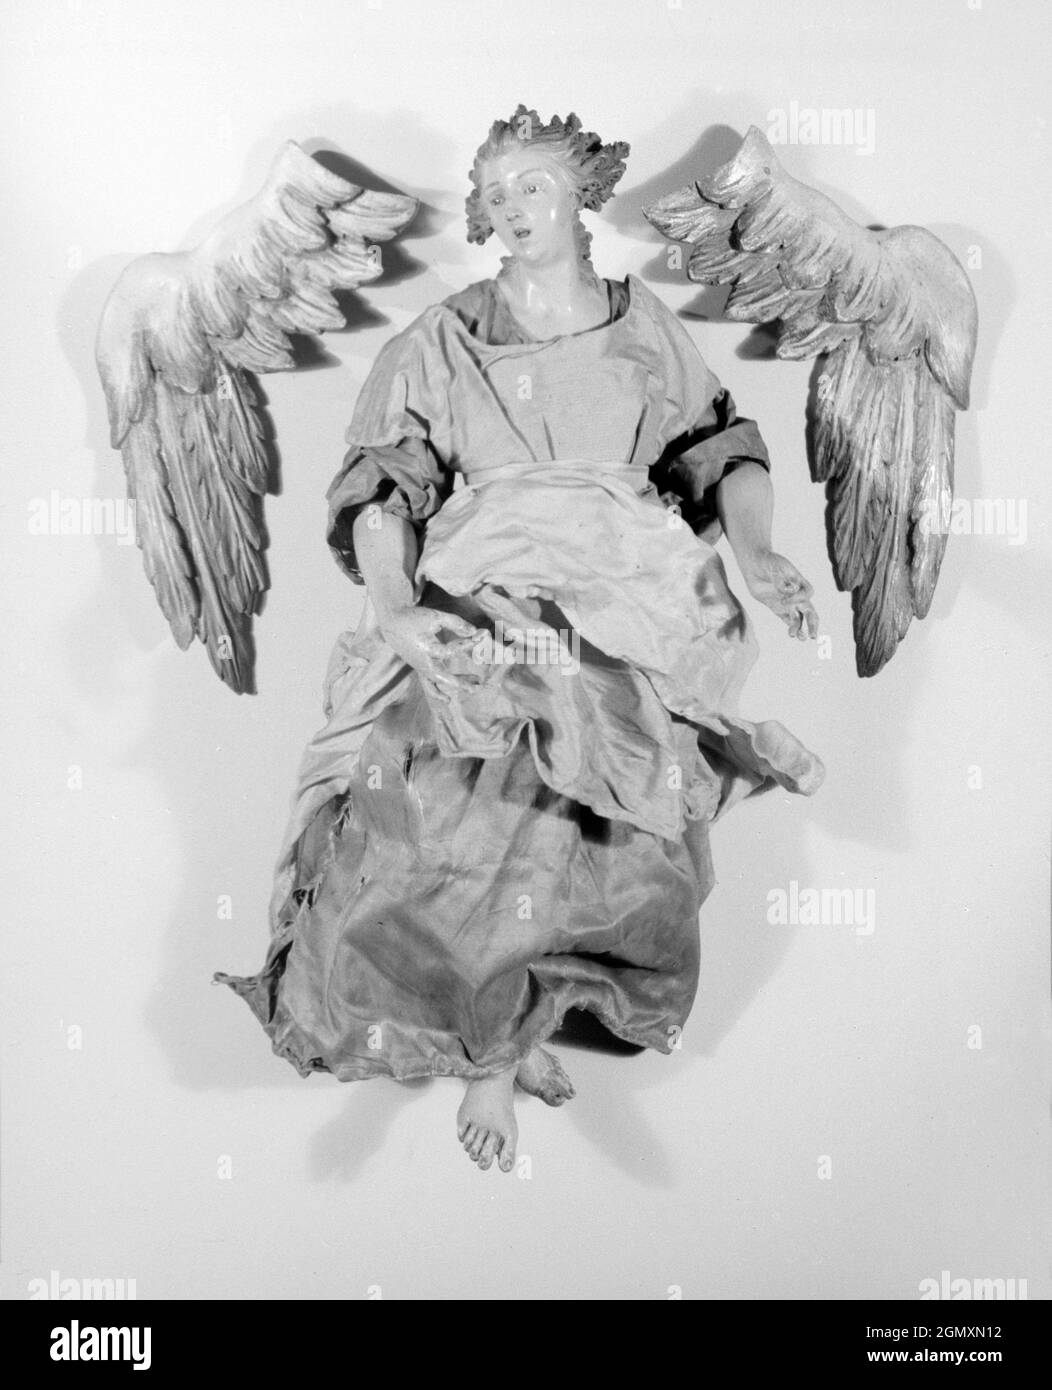 wings orlando  Angel wings wall art, Angel wings art, Angel wings drawing